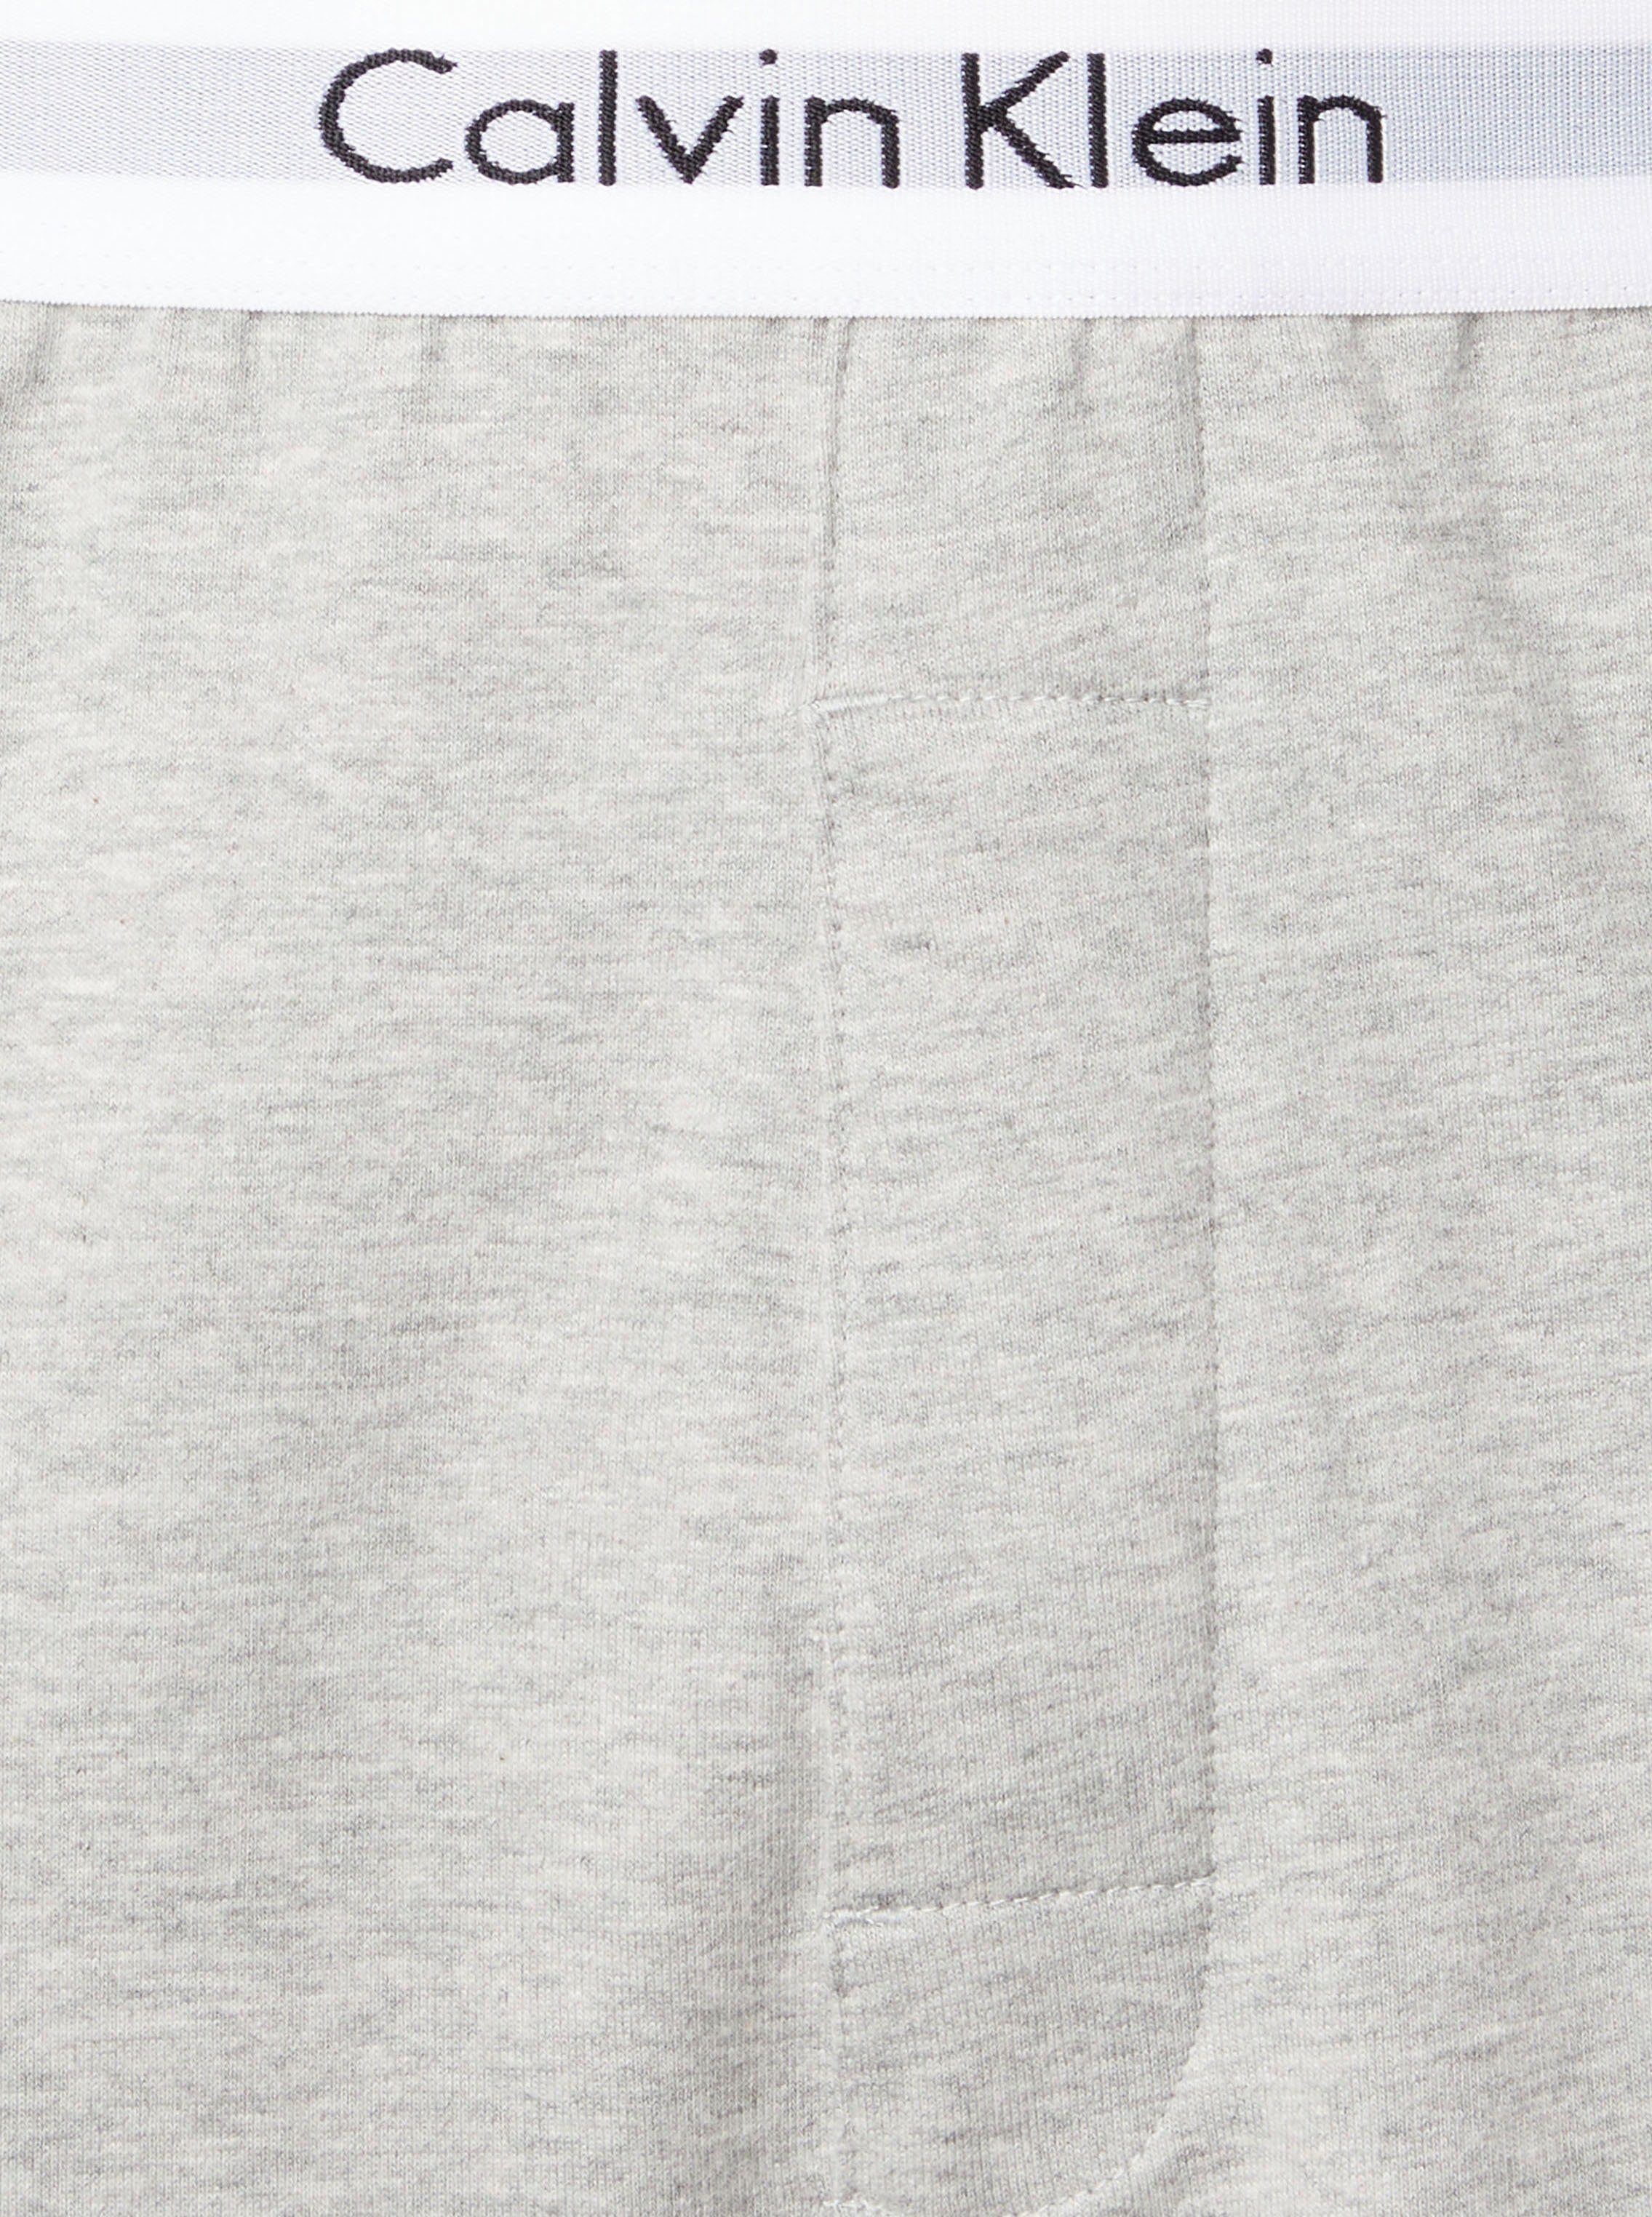 grau Calvin Wäschebund meliert mit Klein - Logoschriftzug Calvin Underwear Klein Schlafshorts am